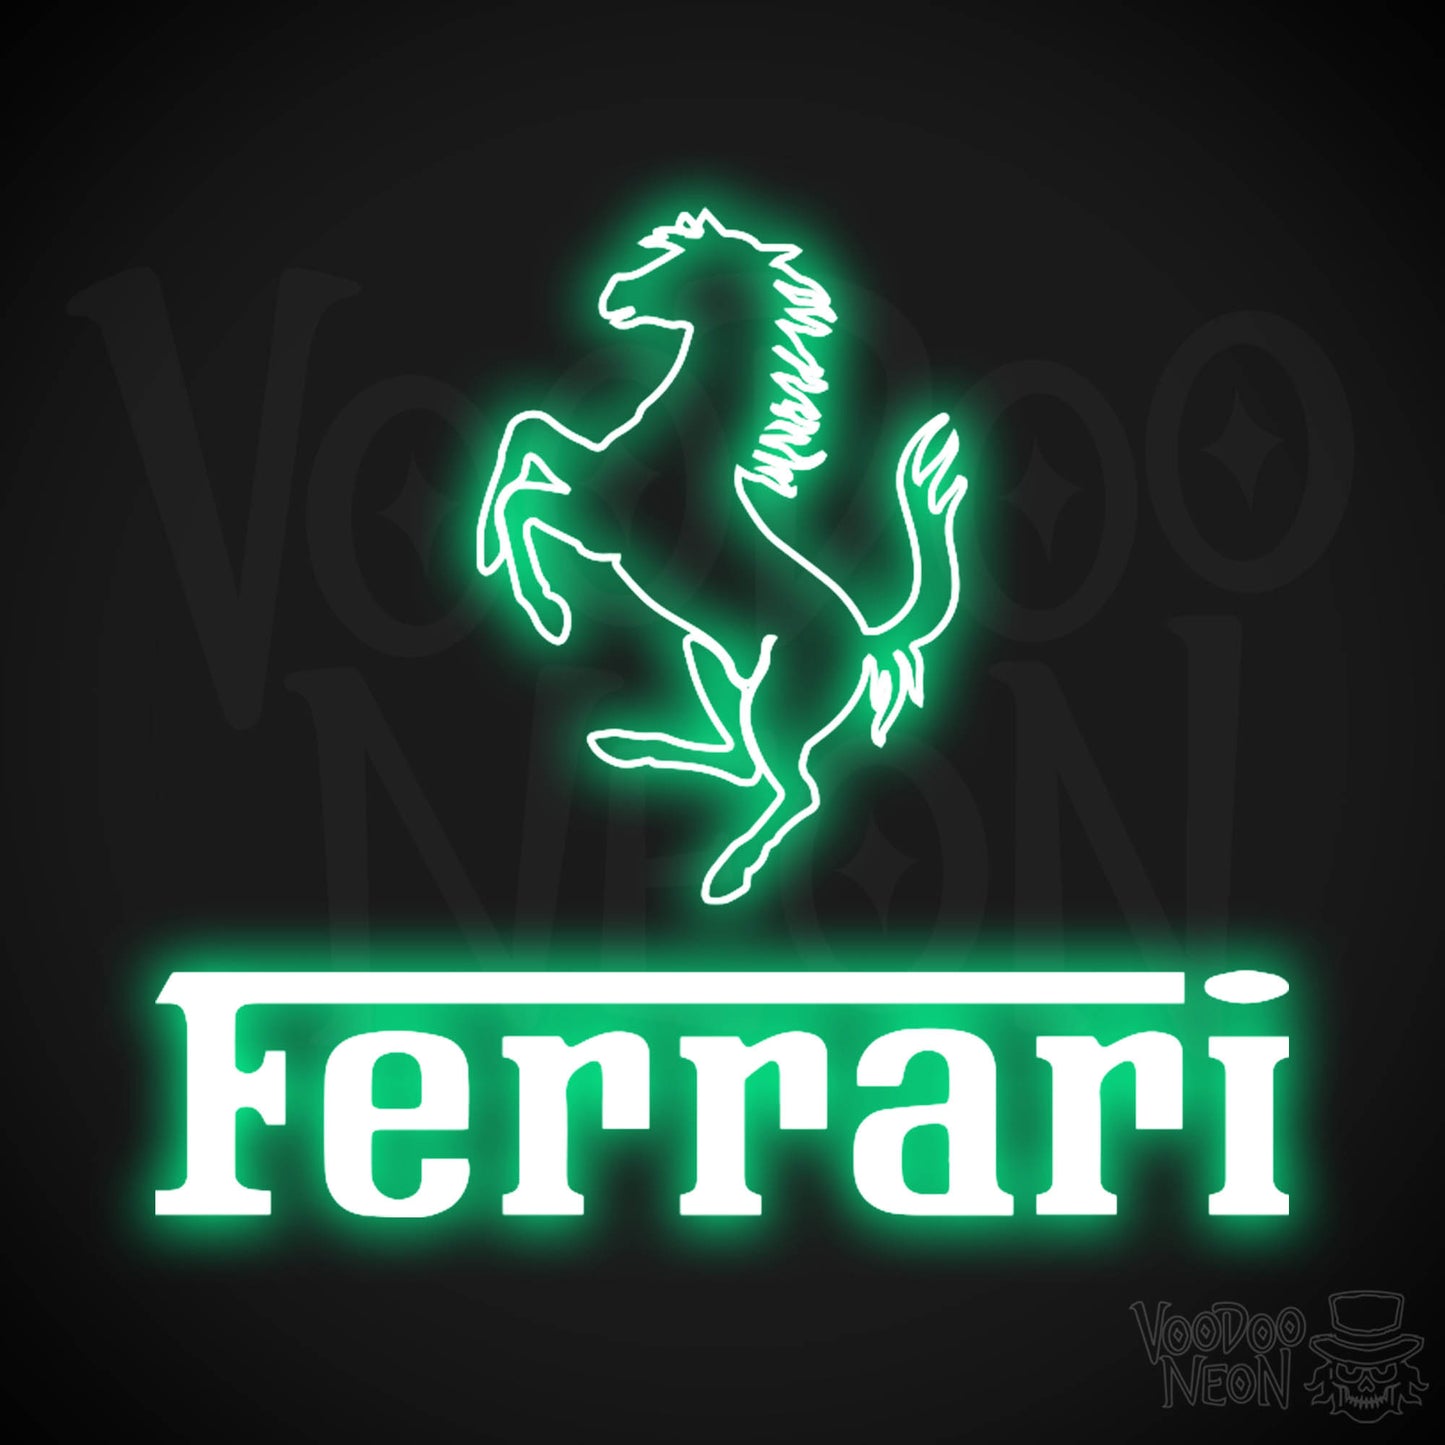 Ferrari Neon Sign - Neon Ferrari Sign - Ferrari Logo Wall Art - Color Green